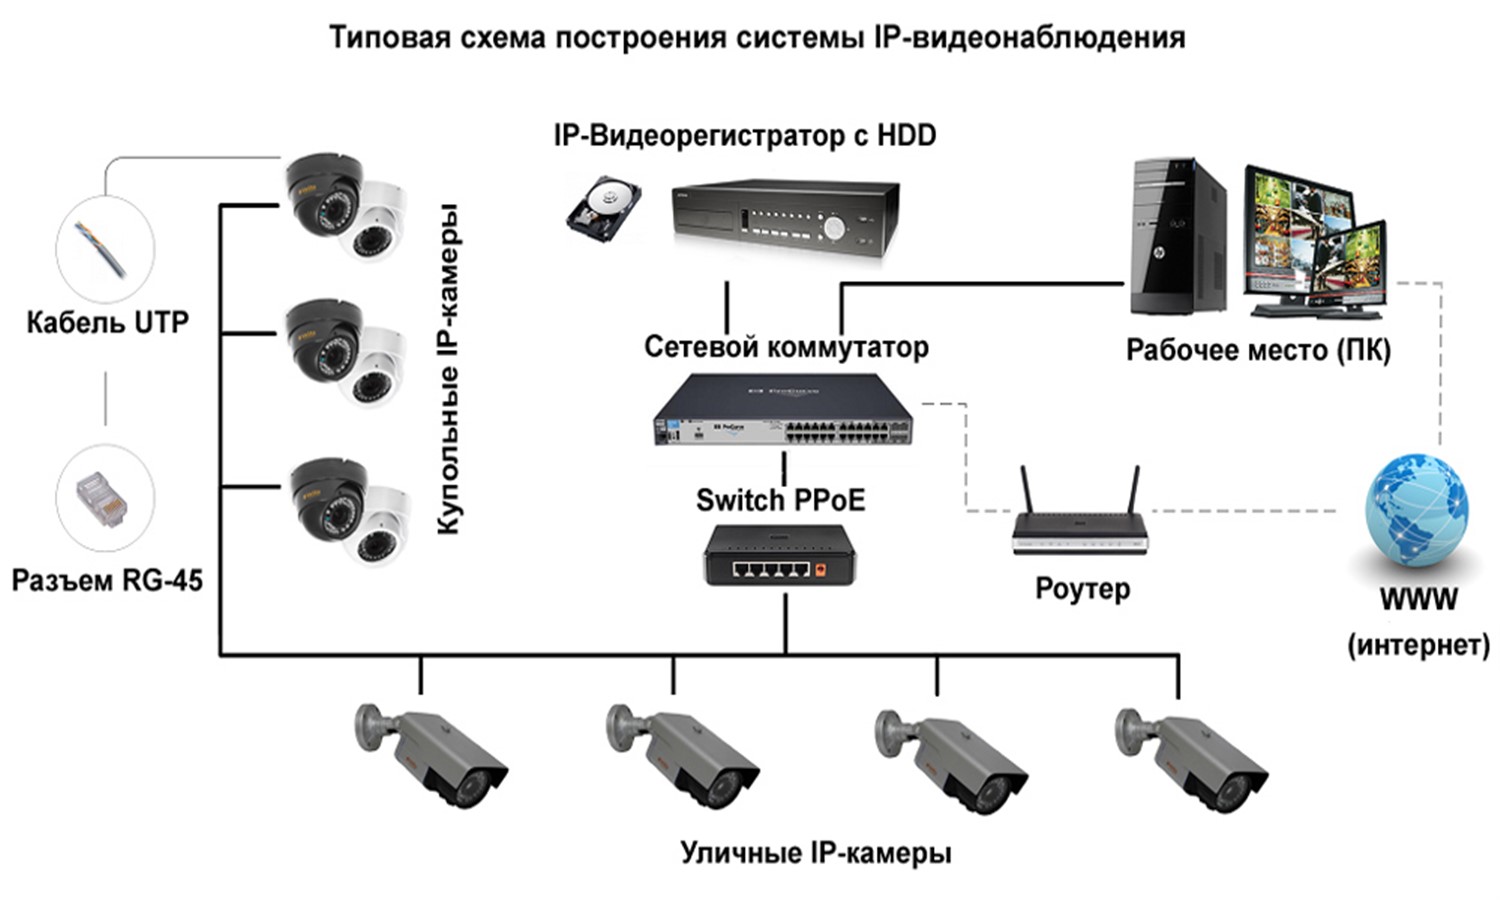 Система аналогового видеонаблюдения структурная схема